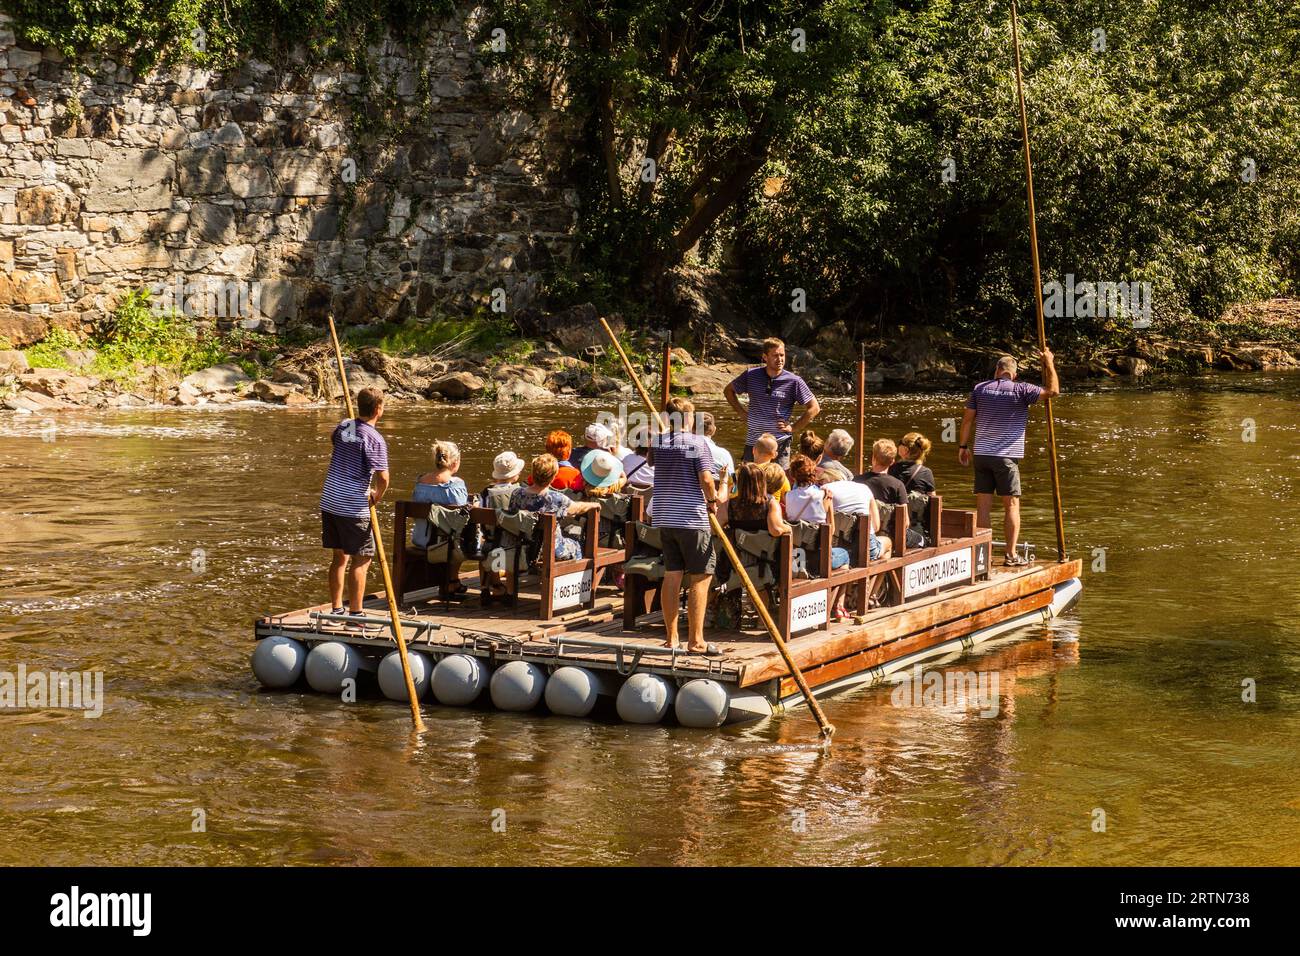 CESKY KRUMLOV, TSCHECHIEN - 6. AUGUST 2020: Floß auf der Moldau in Cesky Krumlov, Tschechien Stockfoto